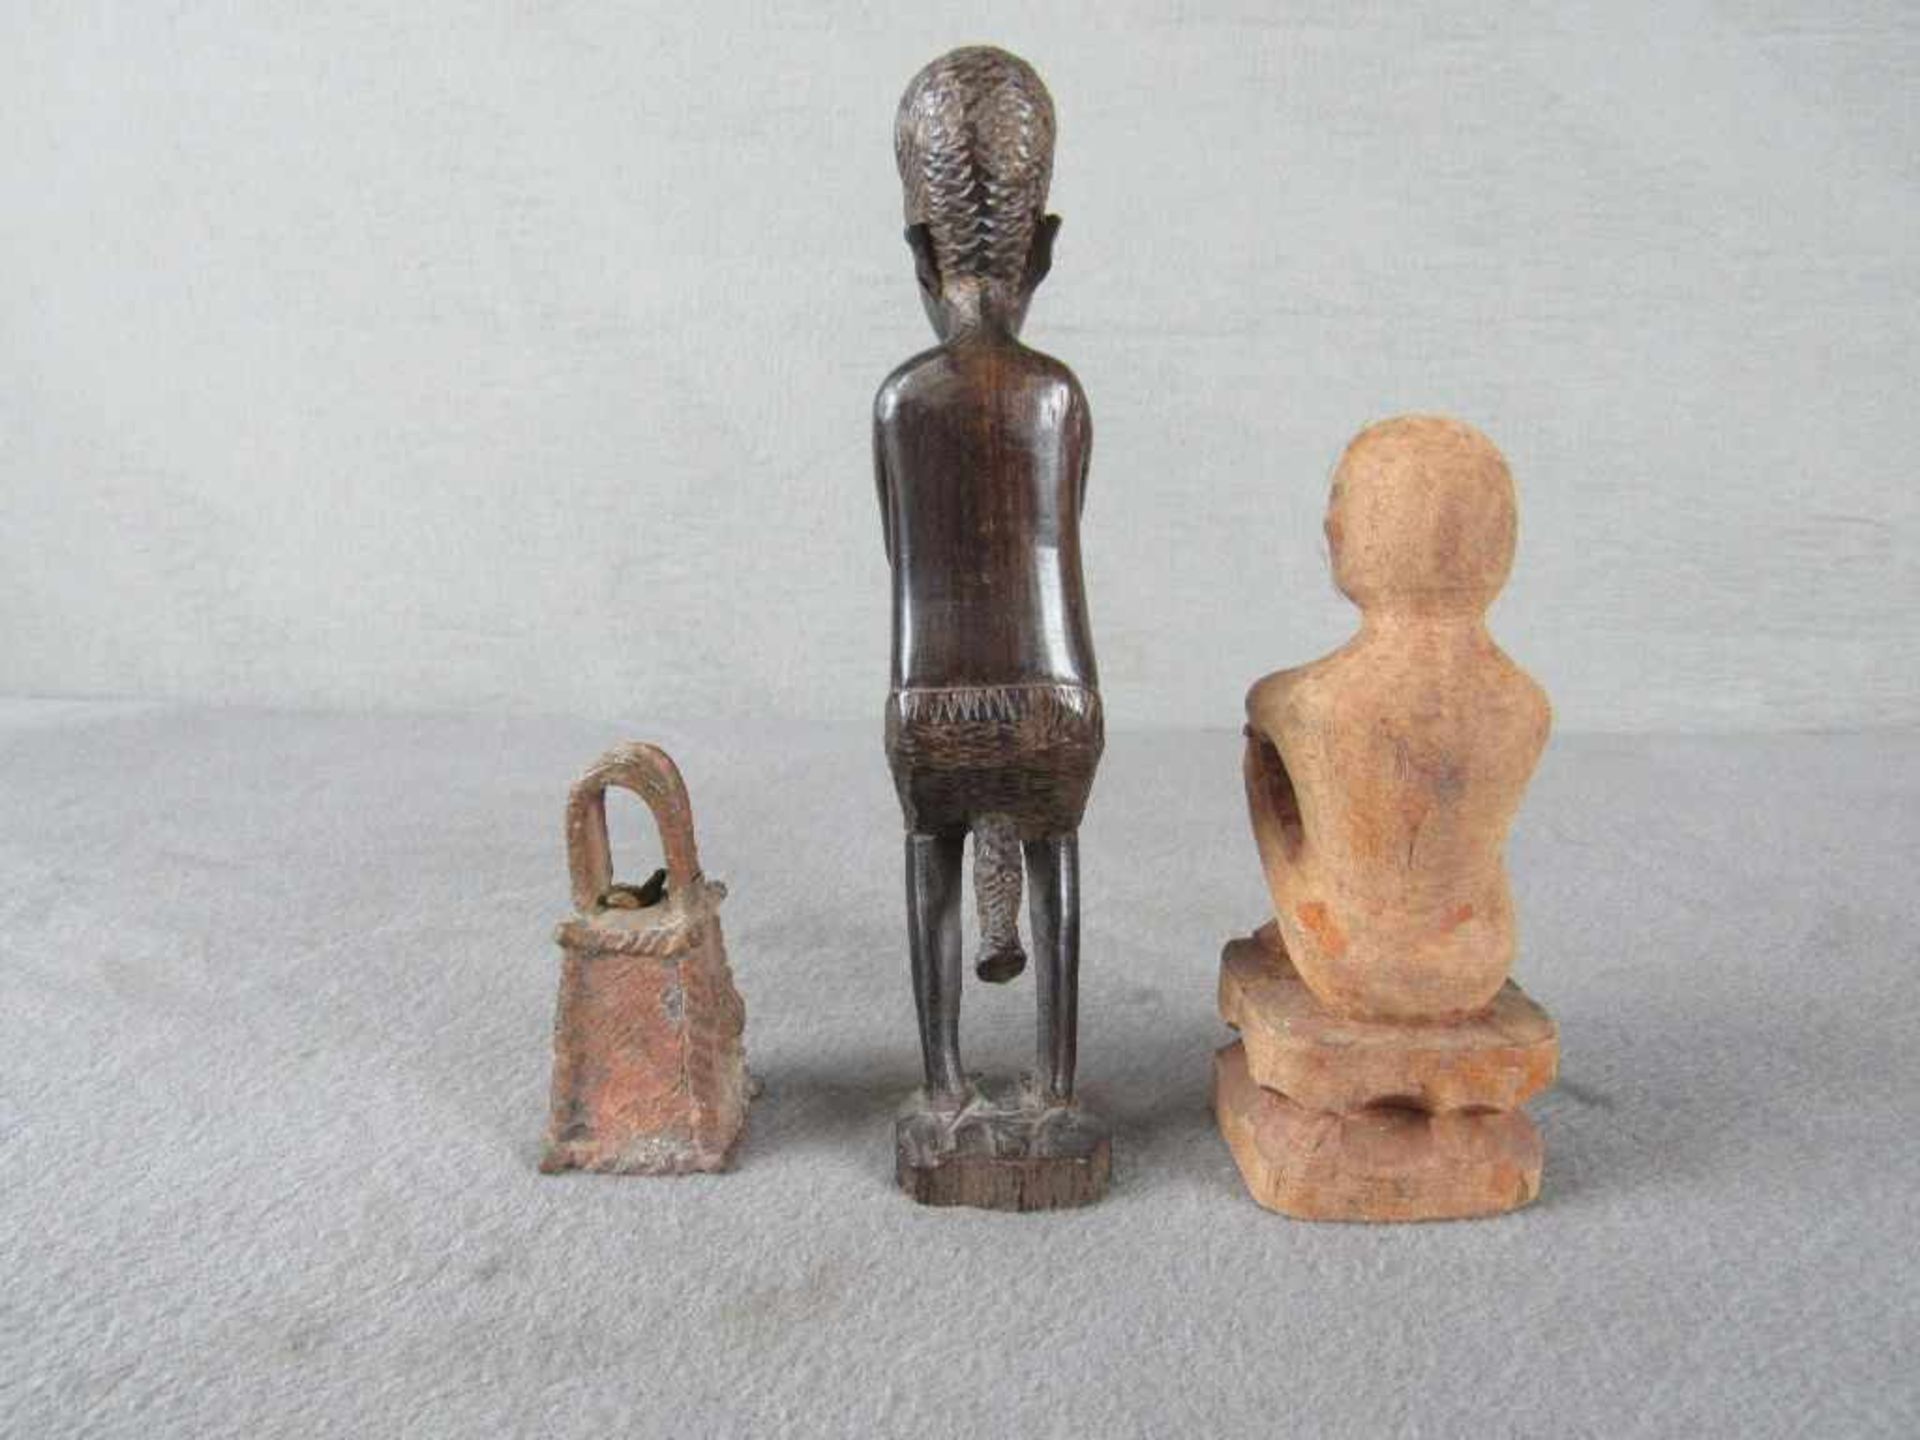 Drei antike afrikanische Skulpturen von 8-19cm- - -20.00 % buyer's premium on the hammer price19. - Image 3 of 3